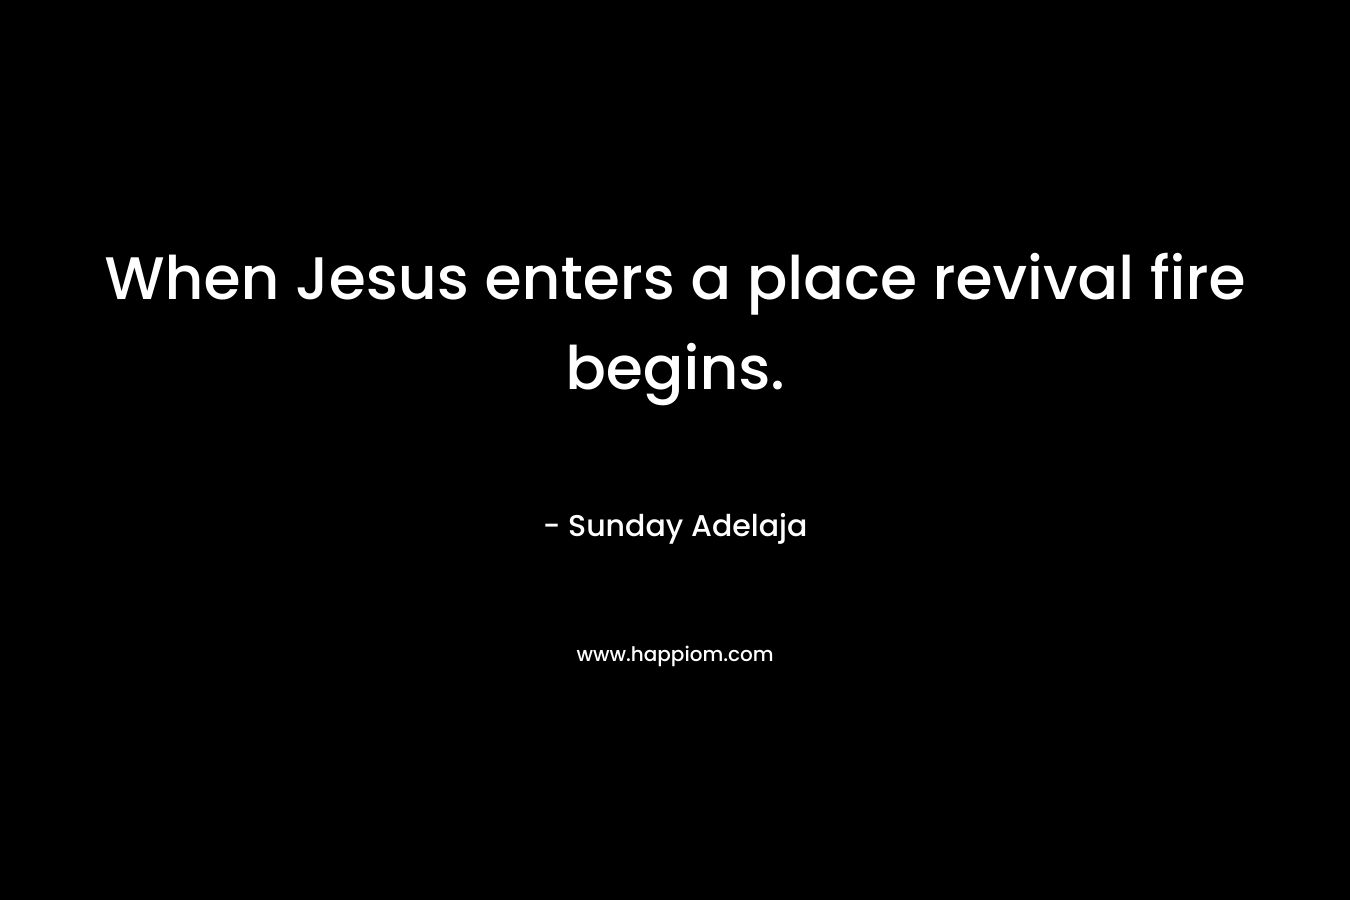 When Jesus enters a place revival fire begins.